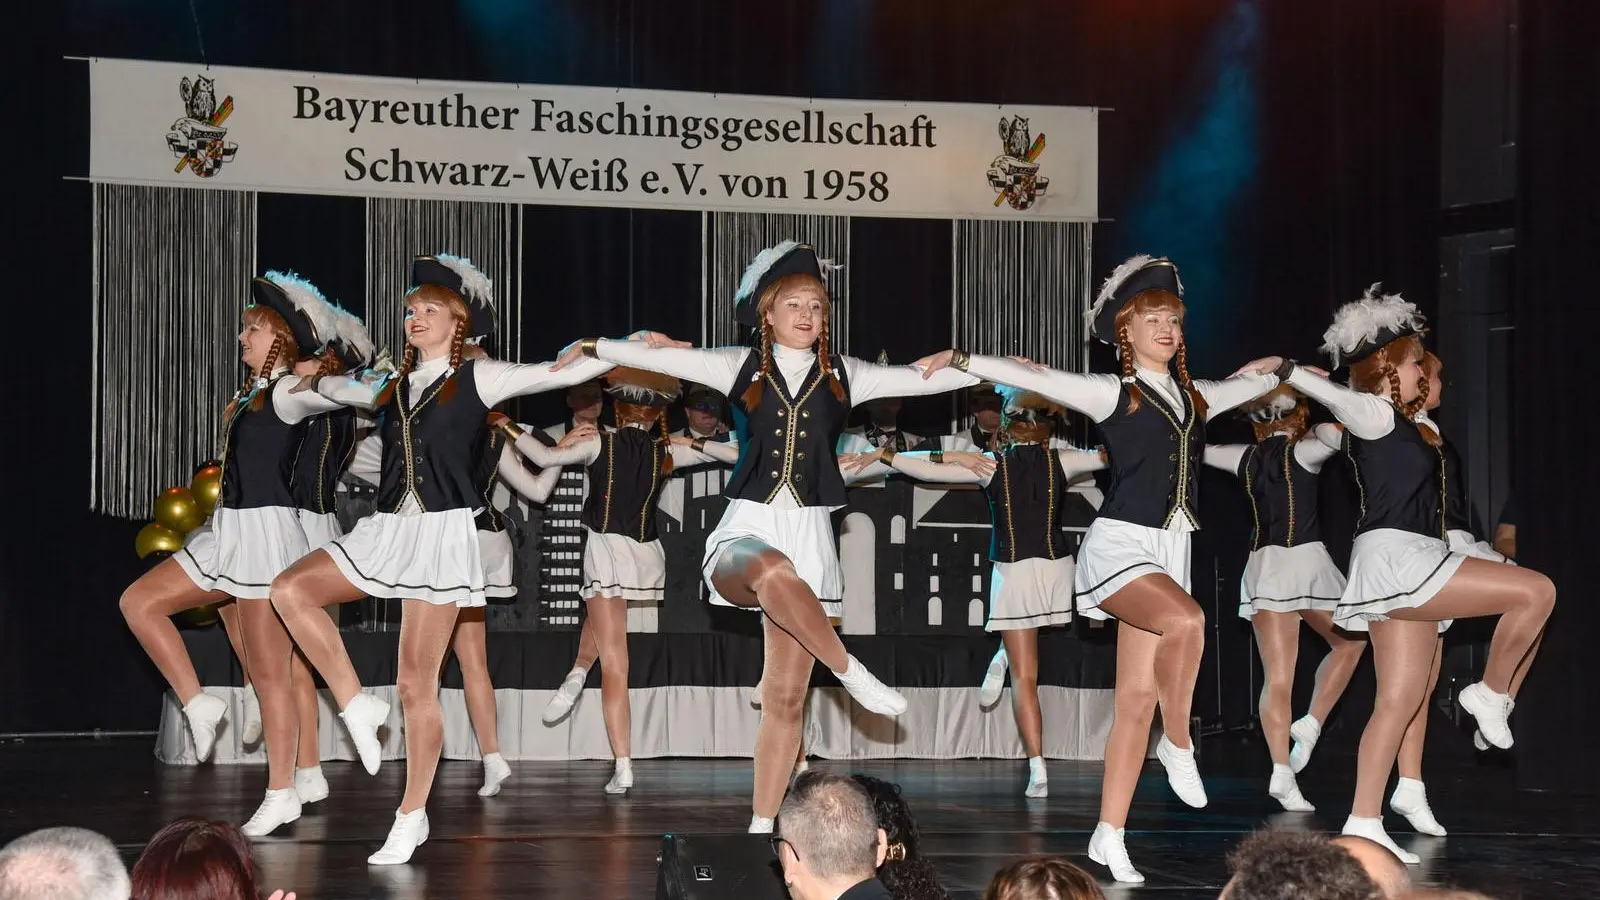 Die Galaprunksitzung der Faschingsgesellschaft Schwarz Weiß Bayreuth am 27. Januar.  (Foto: Stefan Dörfler )